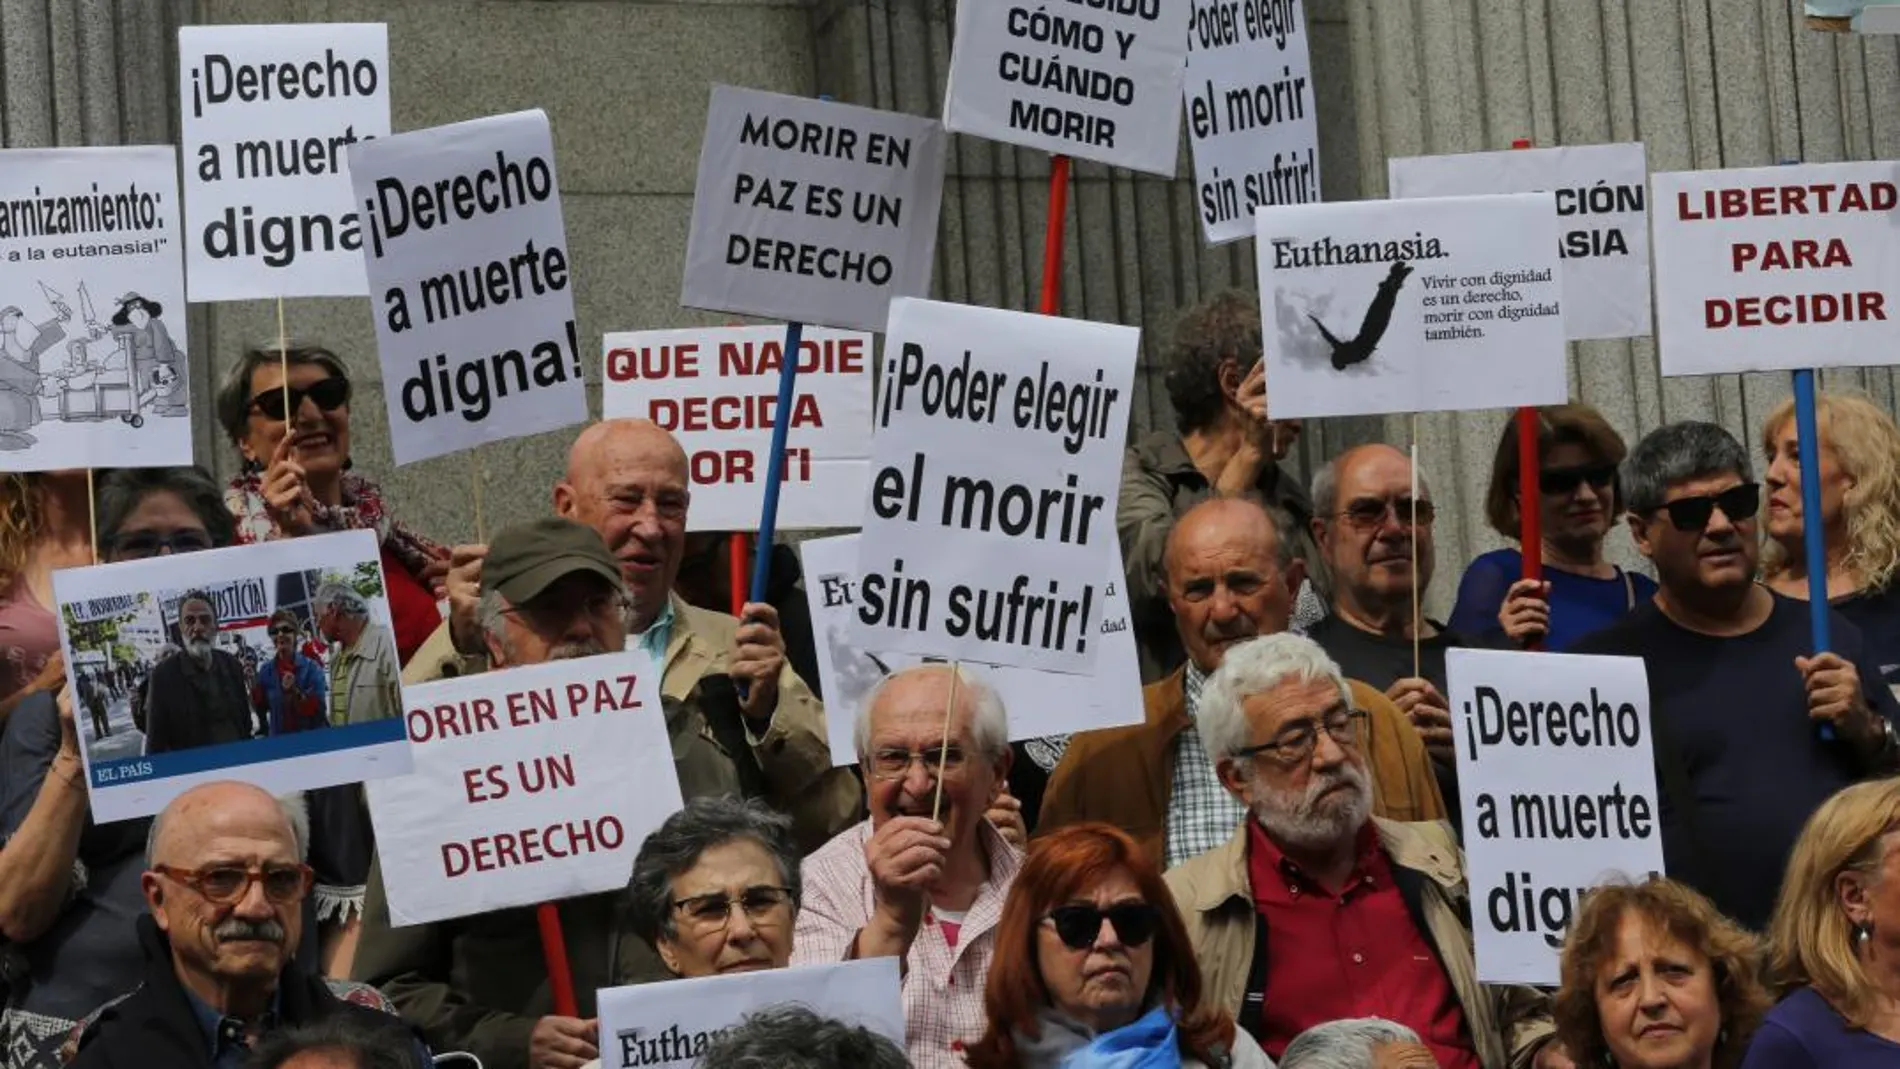 Un grupo de personas se manifiesta en favor de la despenalización de la eutanasia /Rubén Mondelo